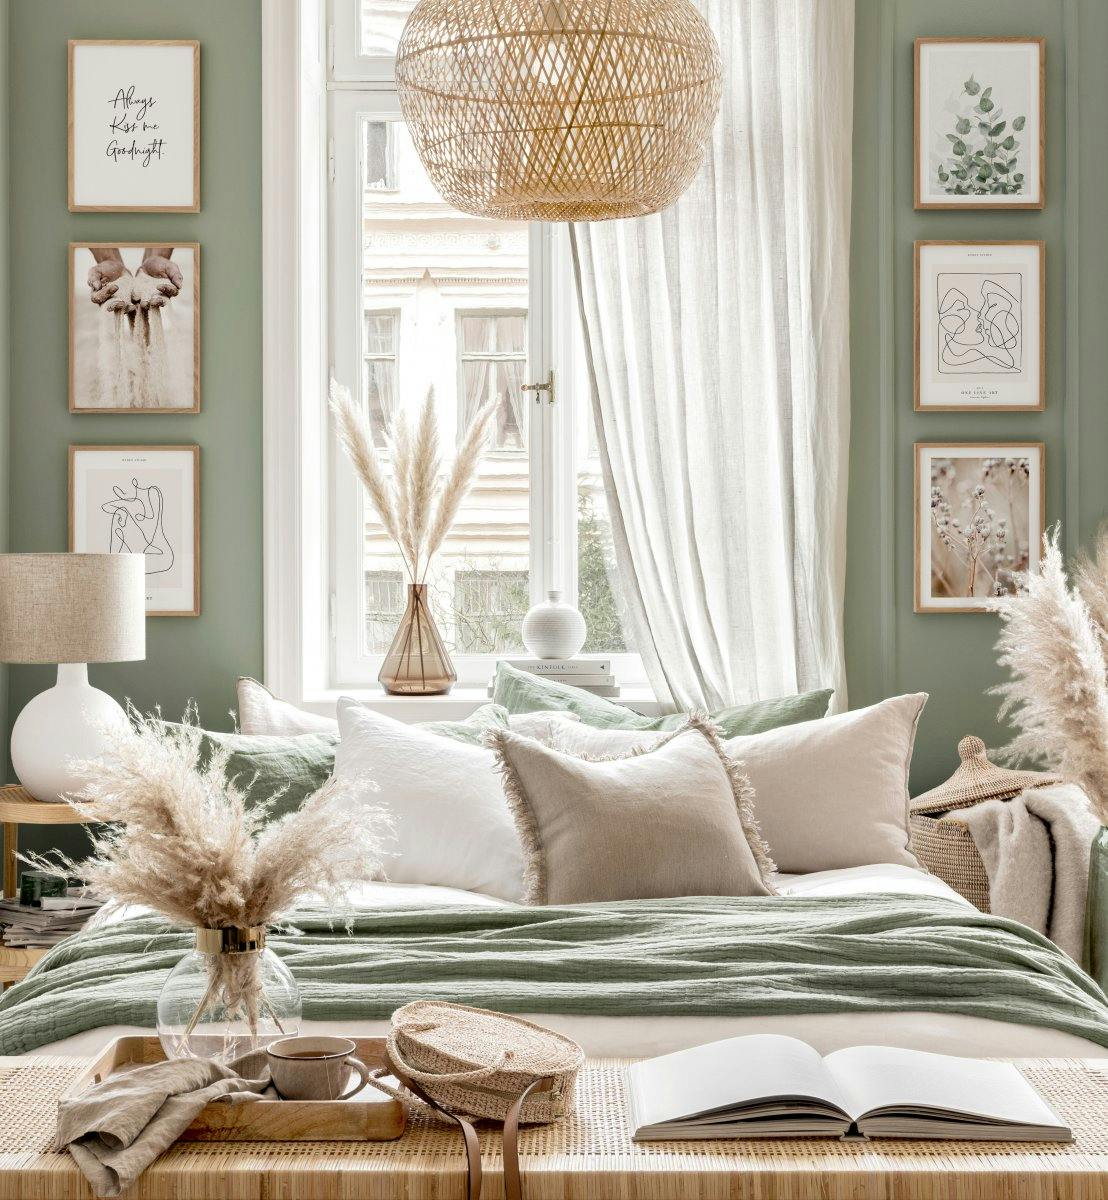 Decor dormitor modern tablouri cu linii rame de stejar